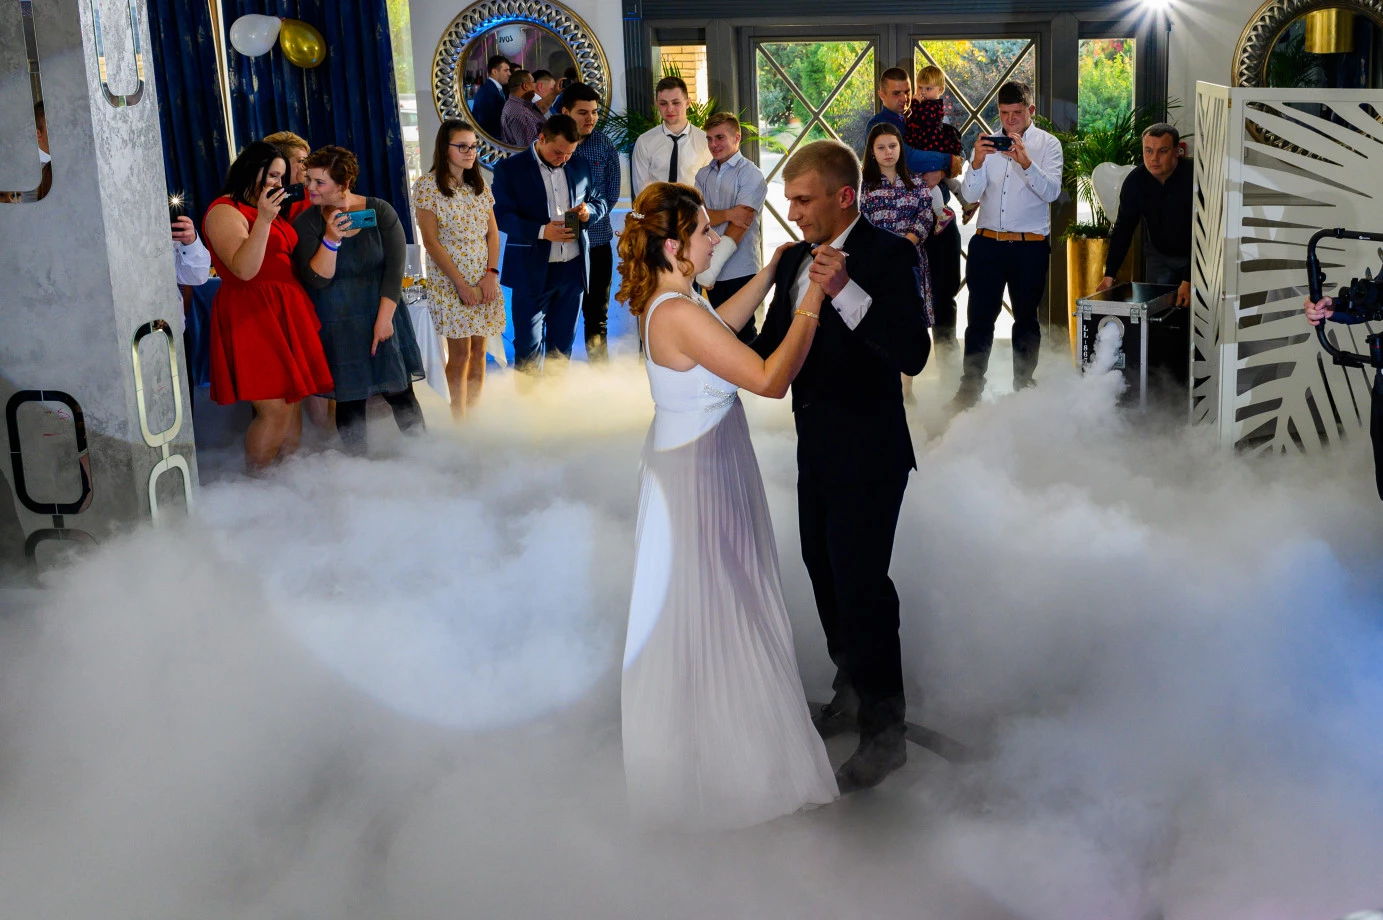 fotograf radom krzysztof-harwacki portfolio zdjecia slubne inspiracje wesele plener slubny sesja slubna